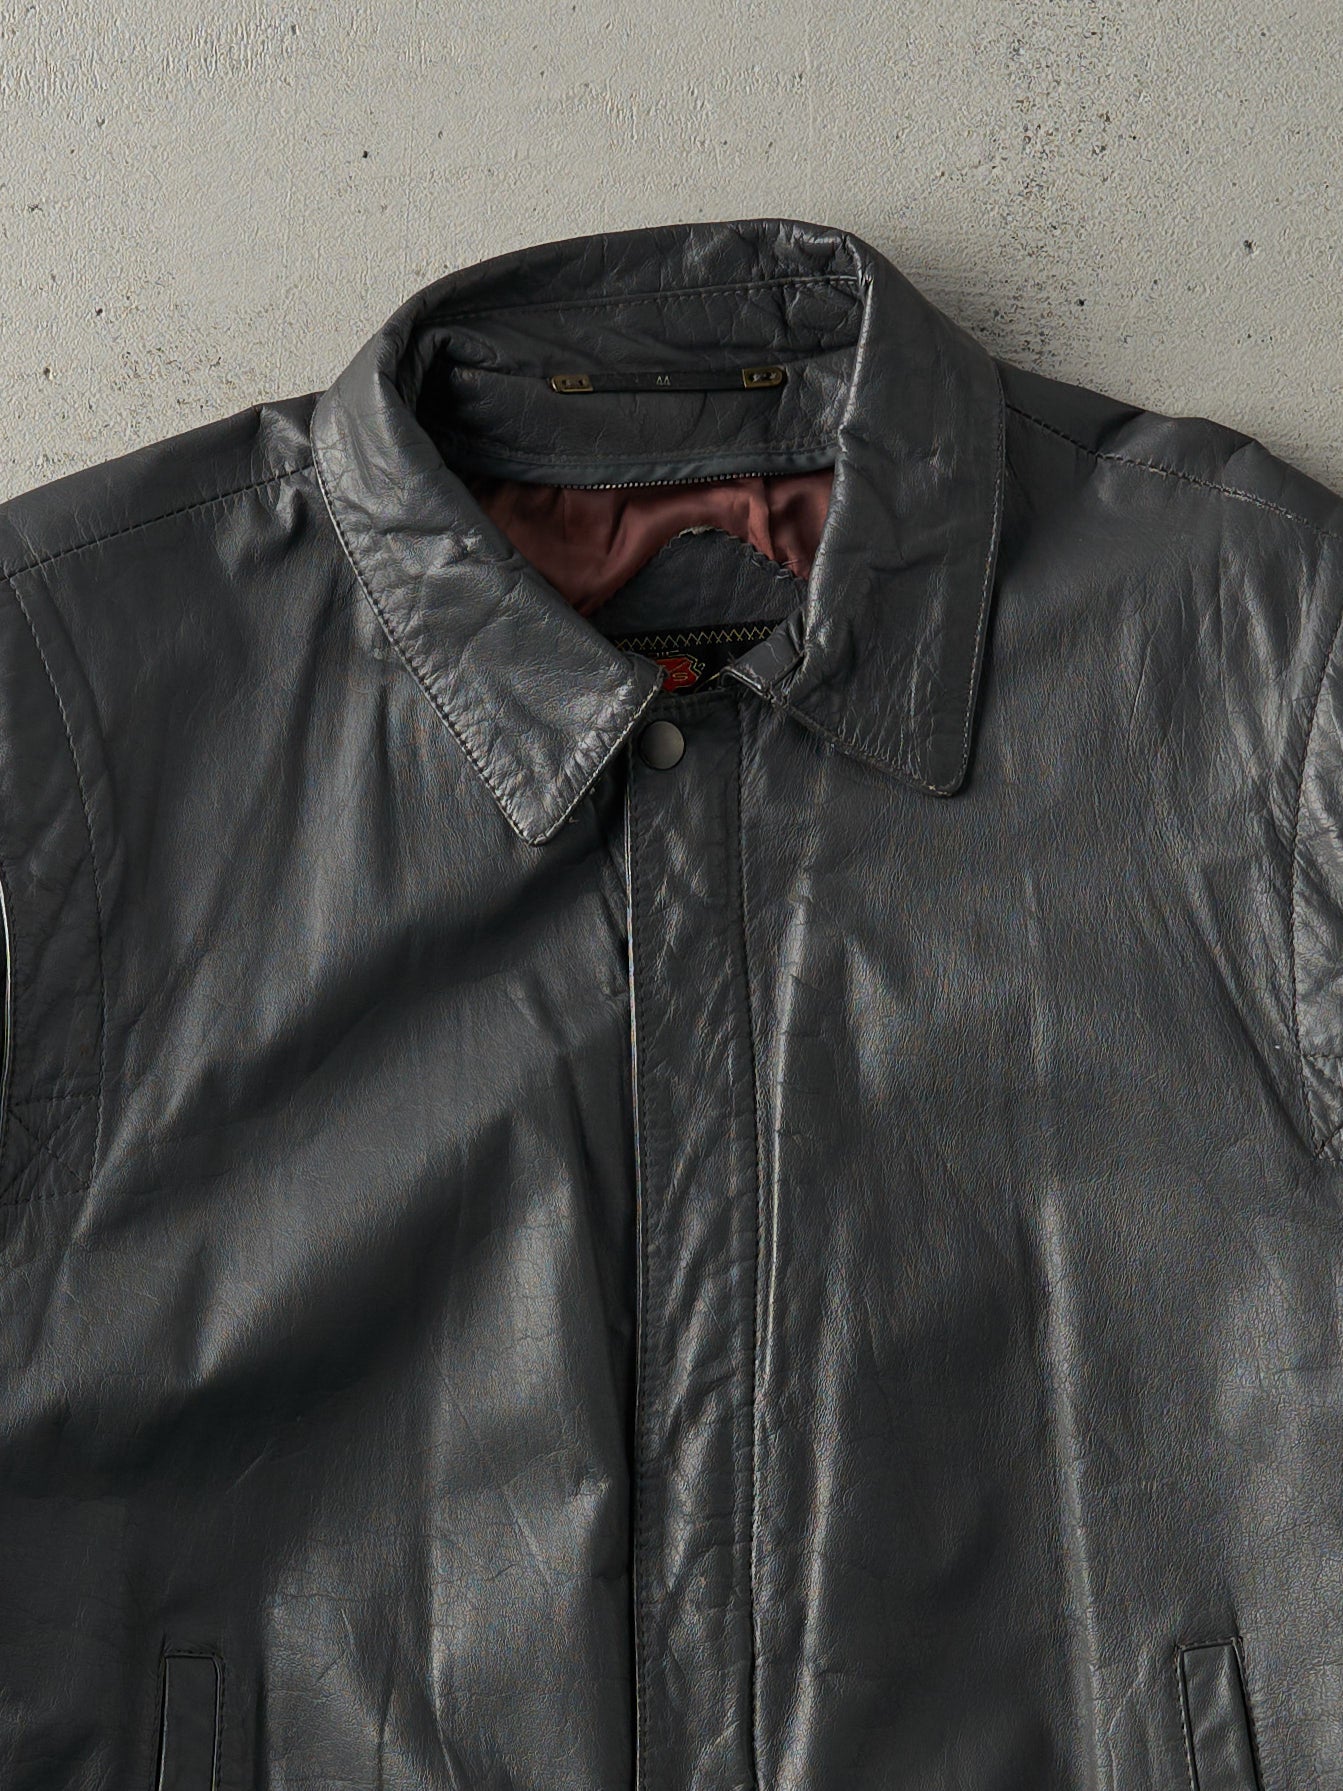 Vintage 80s Grey Reed Sportswear Leather Jacket (M)